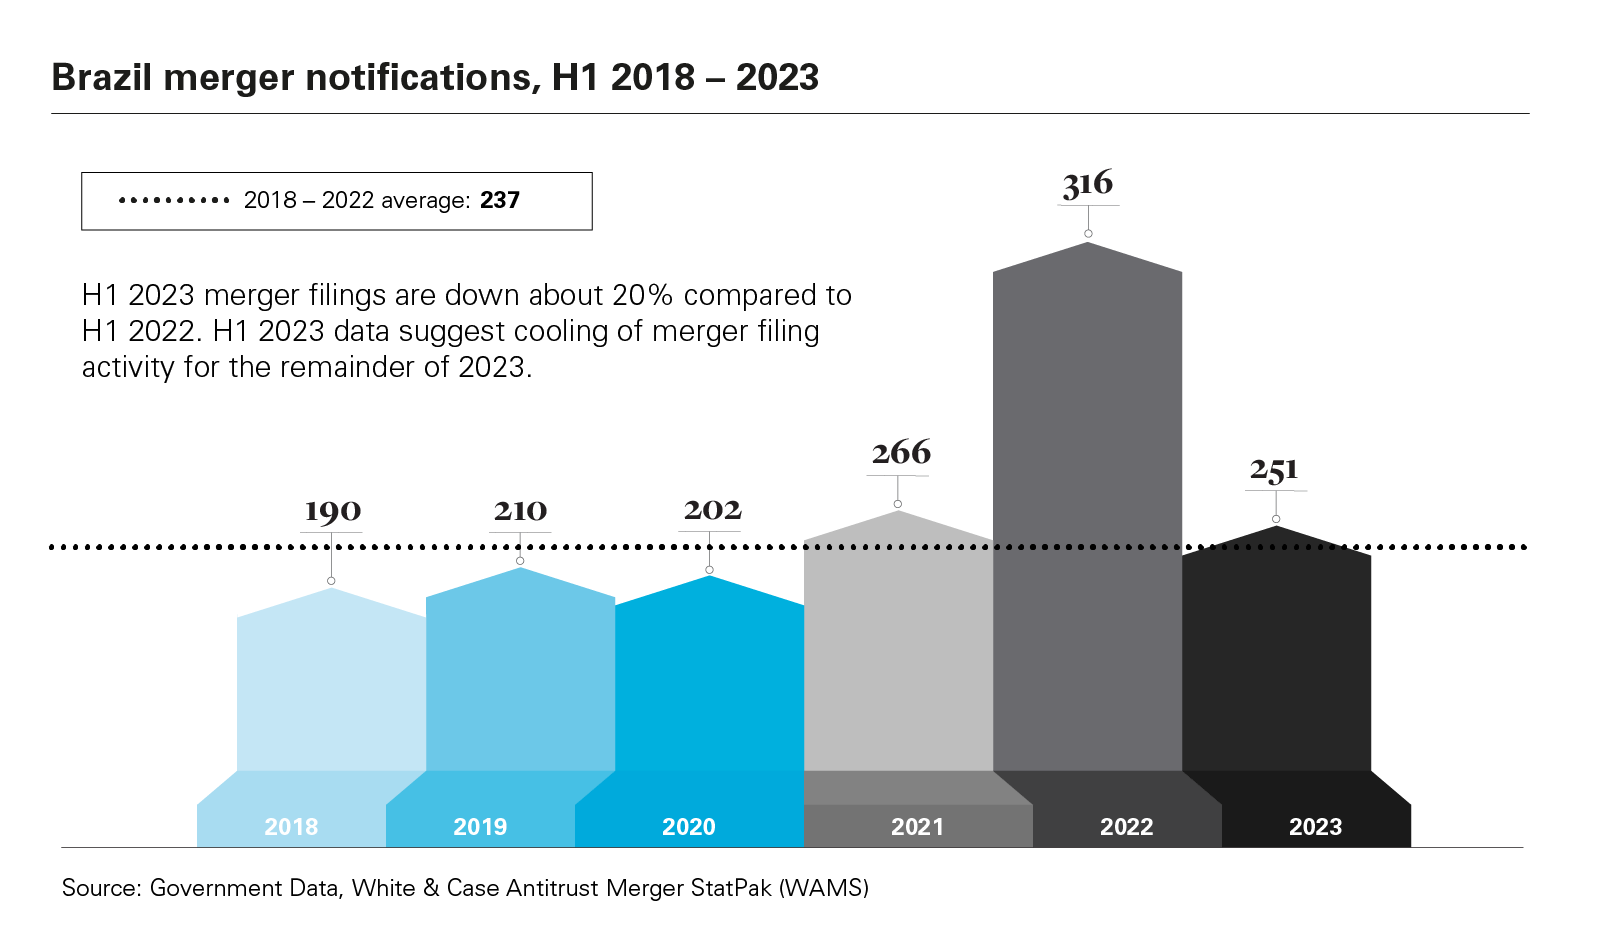 Brazil merger notifications, H1 2018 - 2023 graph